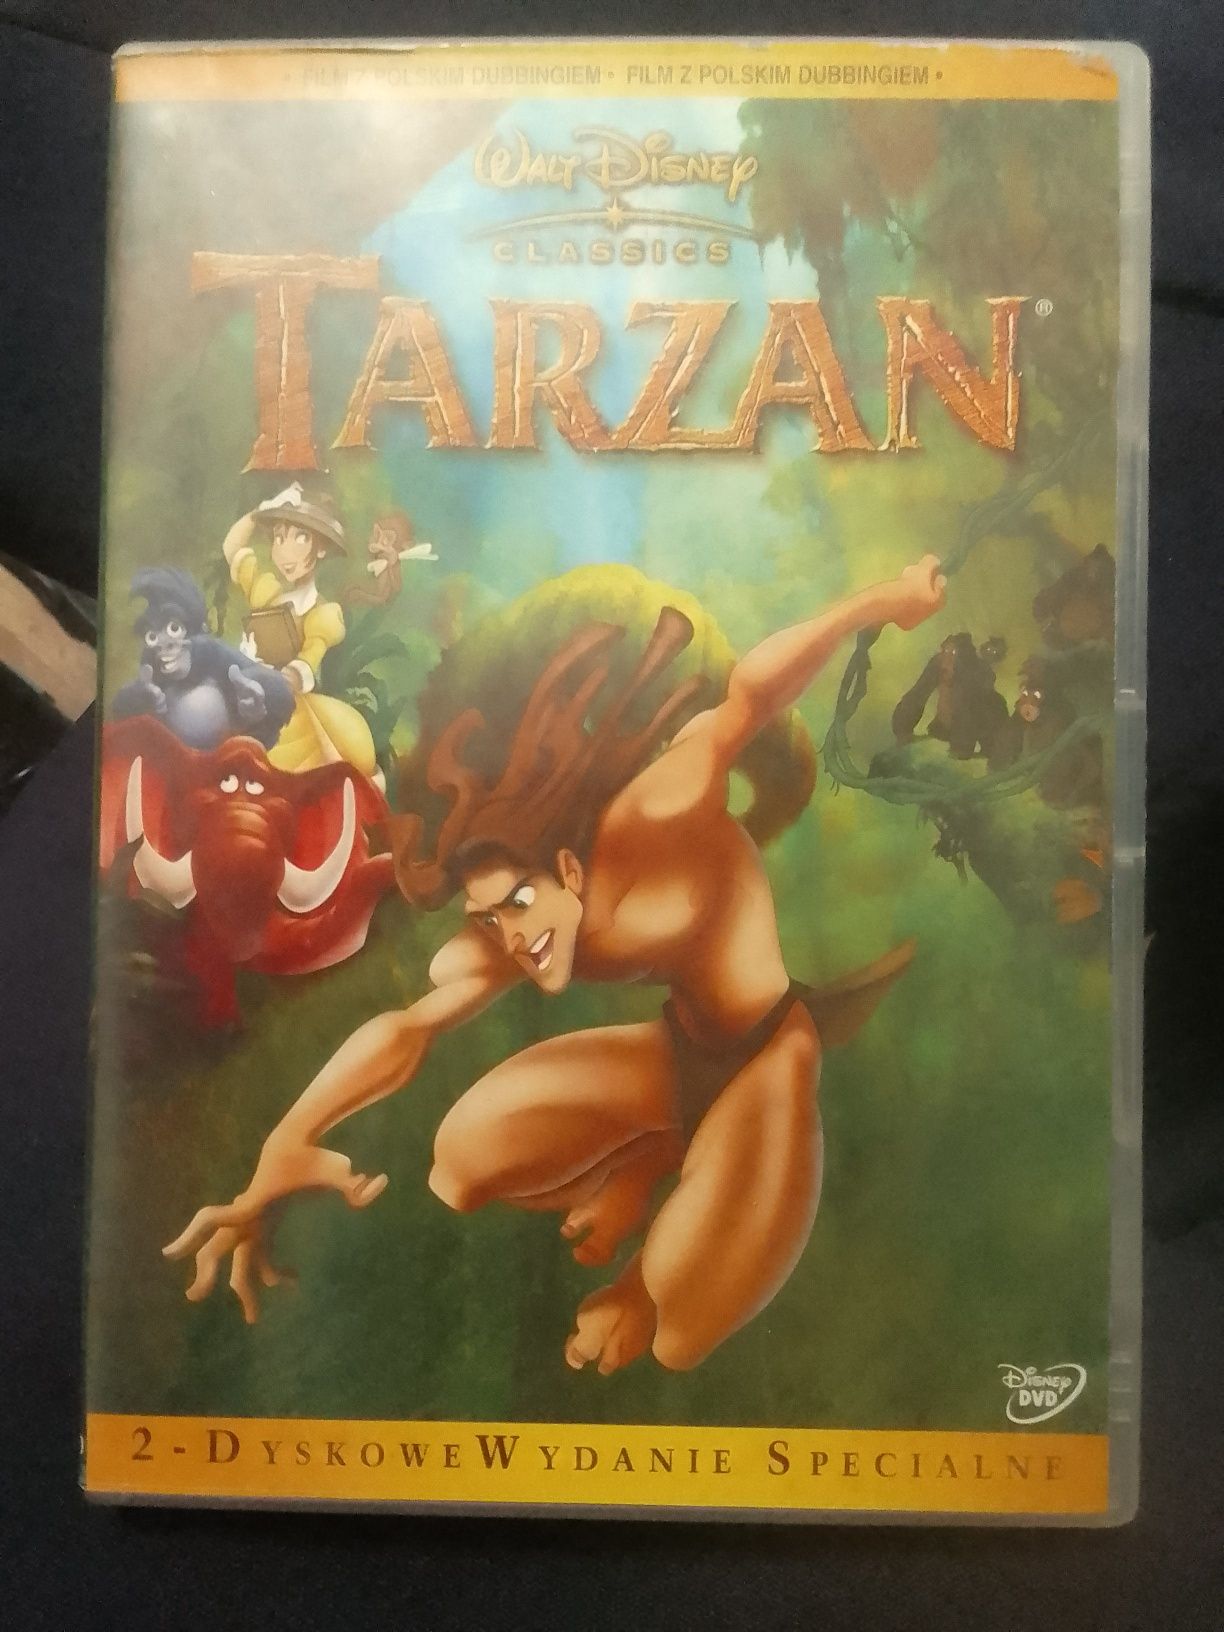 Tarzan bajka dvd 2 dyskowe wydanie